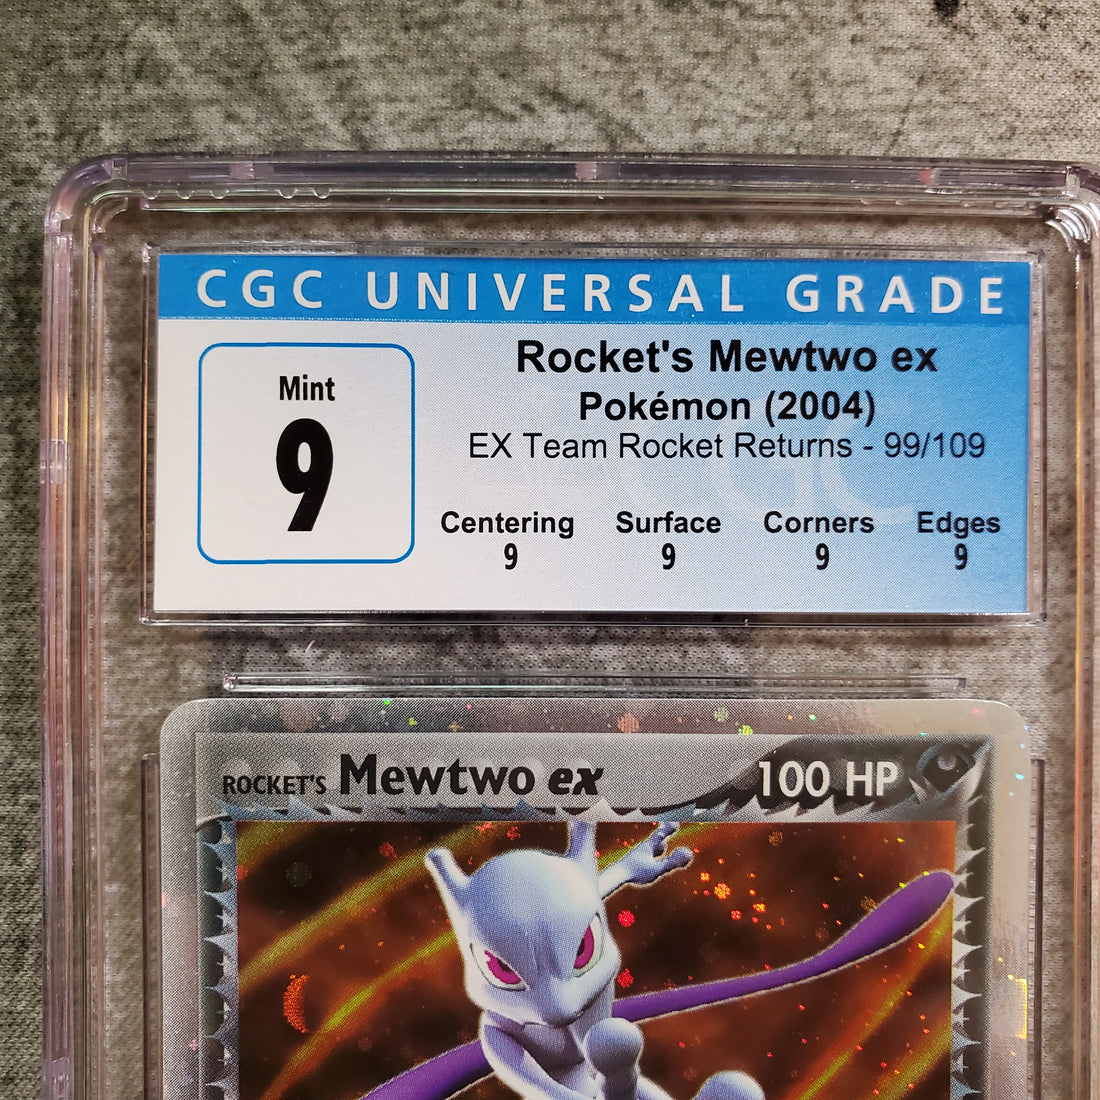 EX Team Rocket Return & Expedition graded cards back!